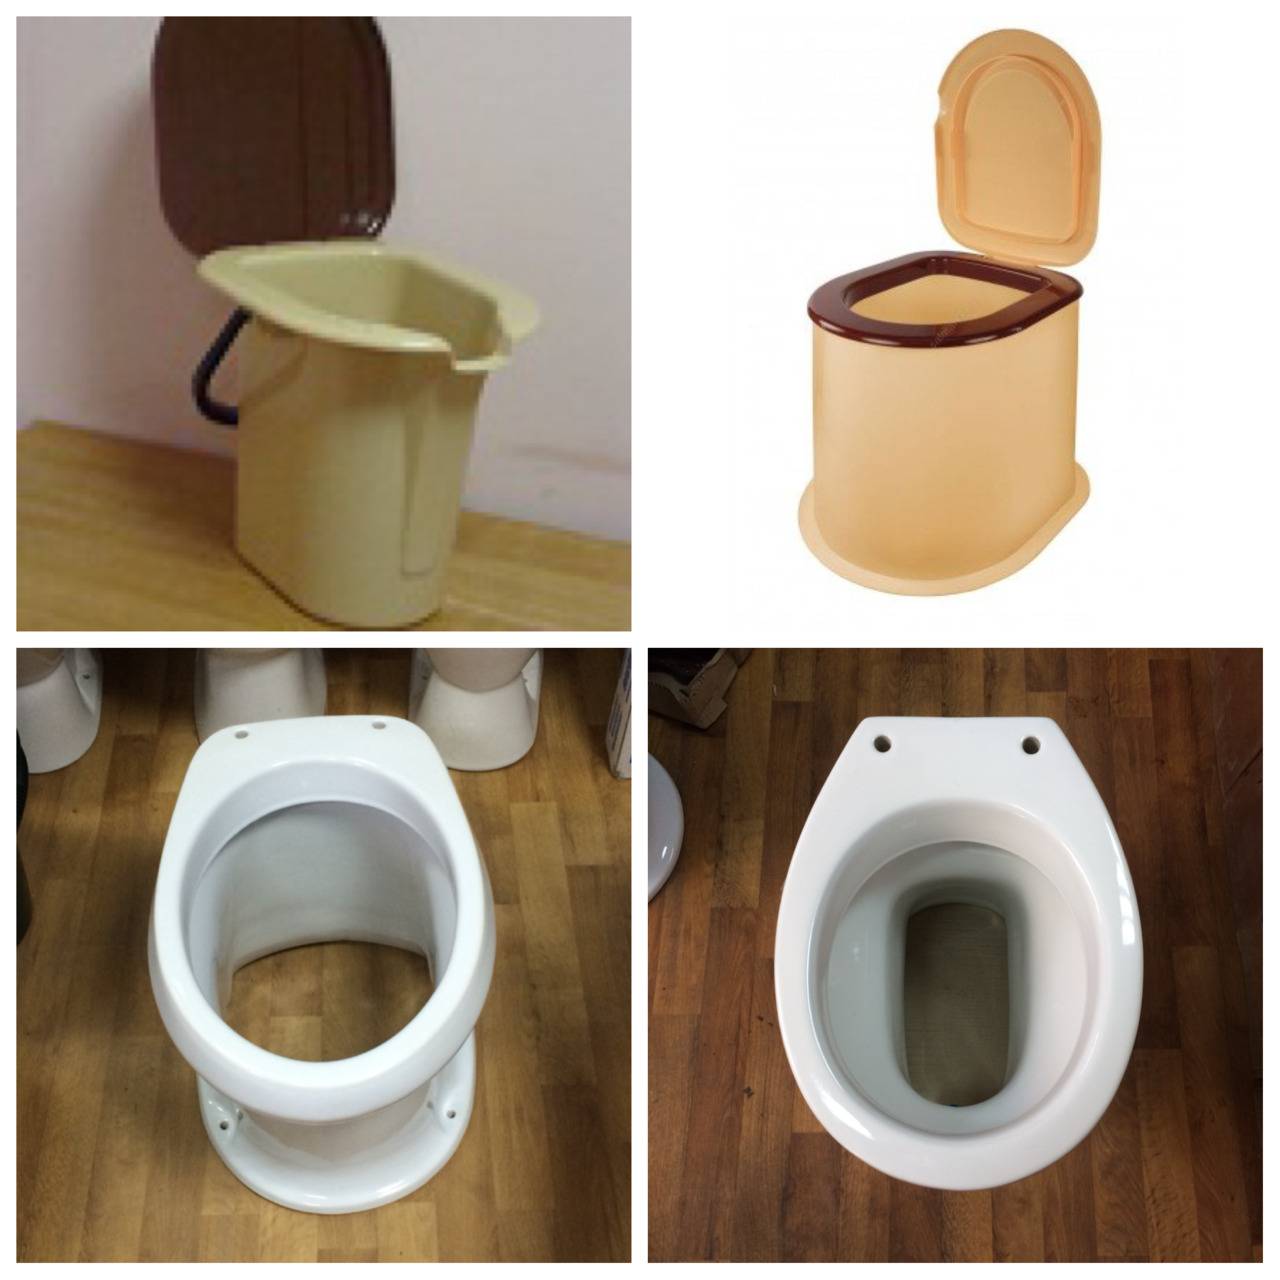 Как выбрать лучший туалет для дачи - фото и отзывы